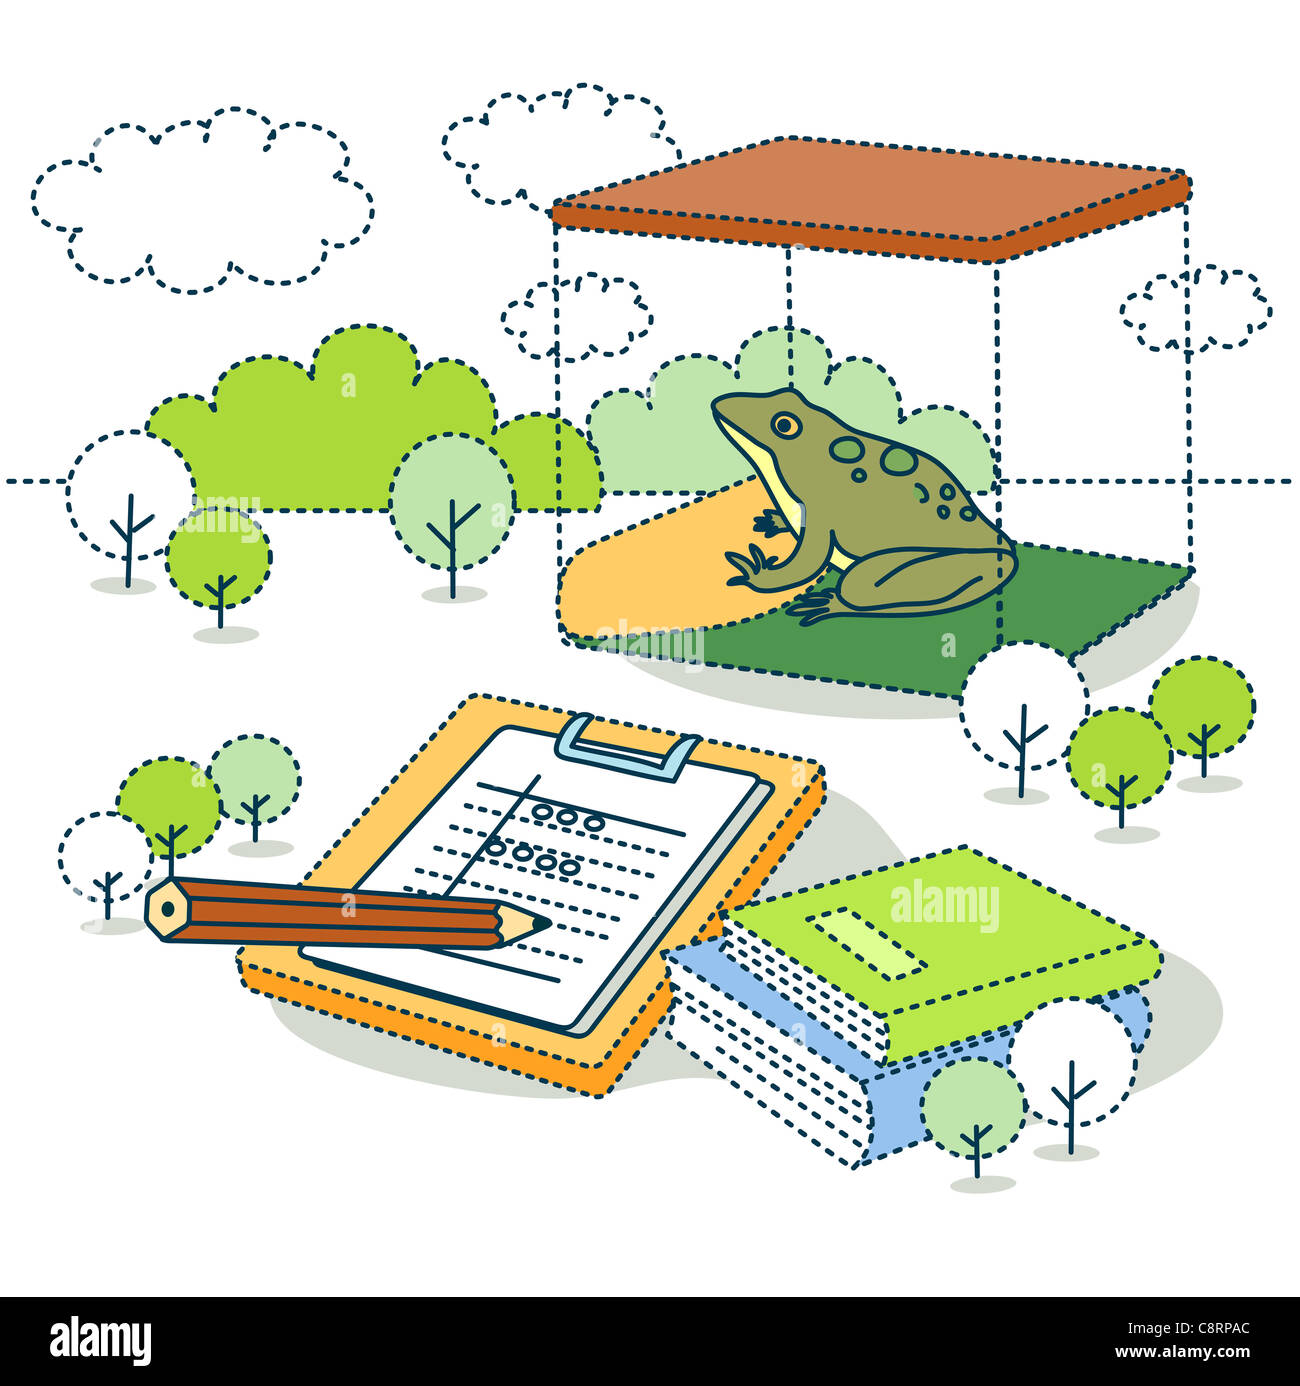 Illustration de frog pour expérience scientifique avec des livres Banque D'Images